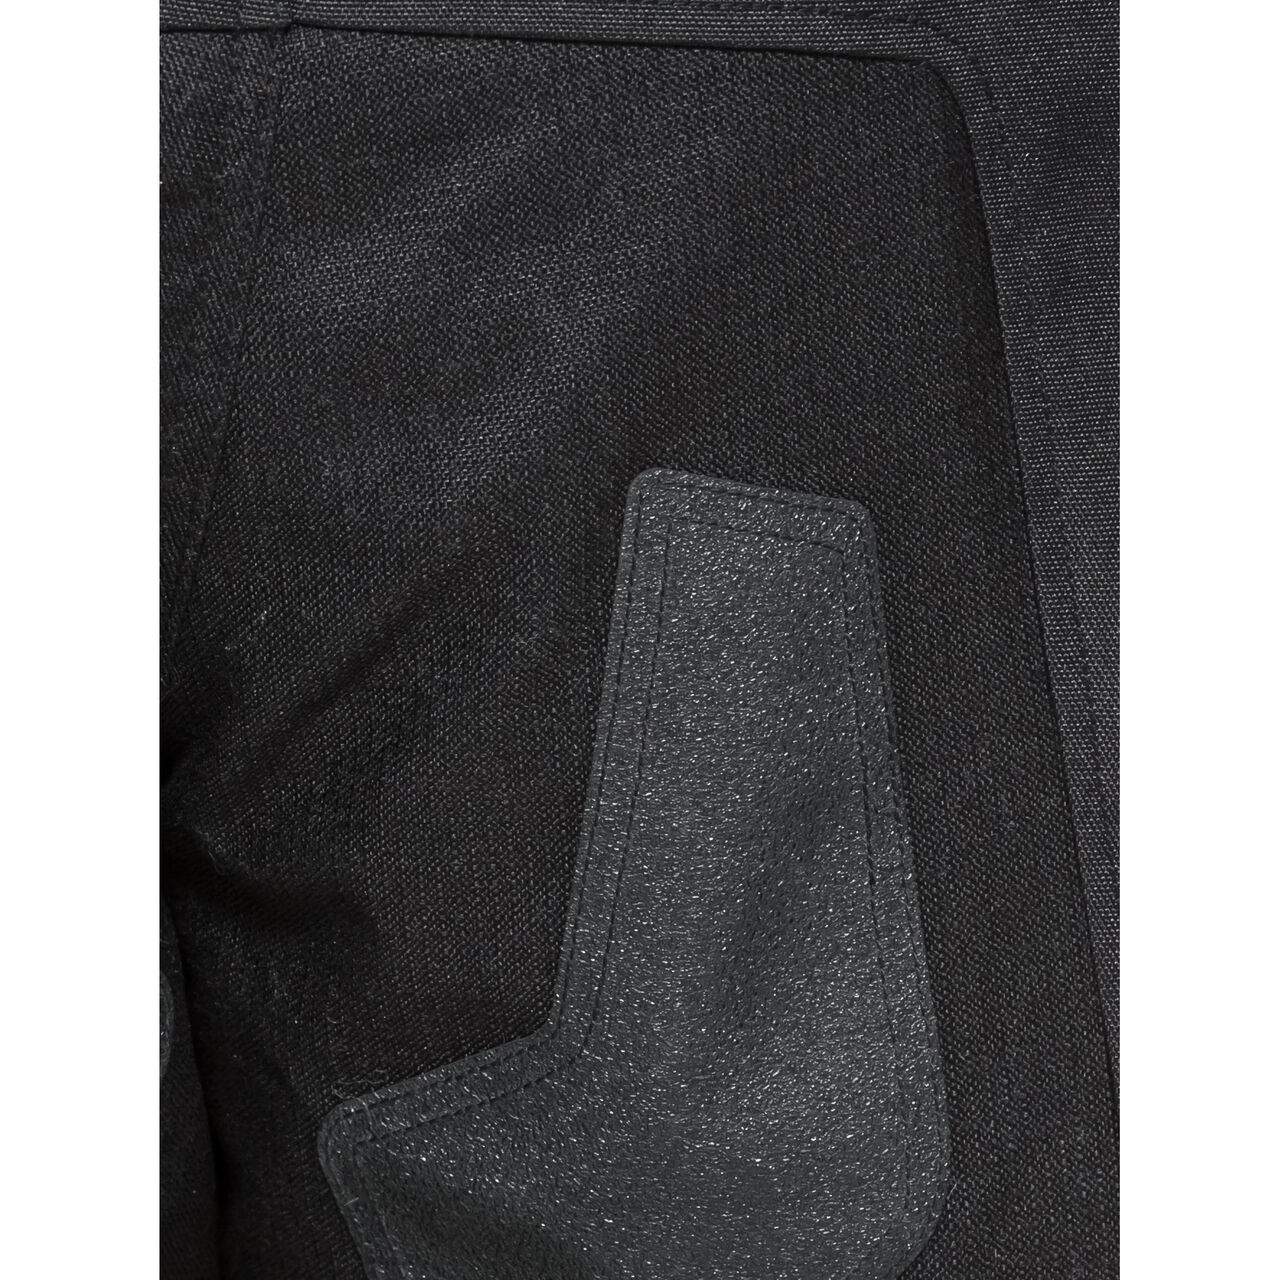 Cedar WP Textilhose schwarz XXL